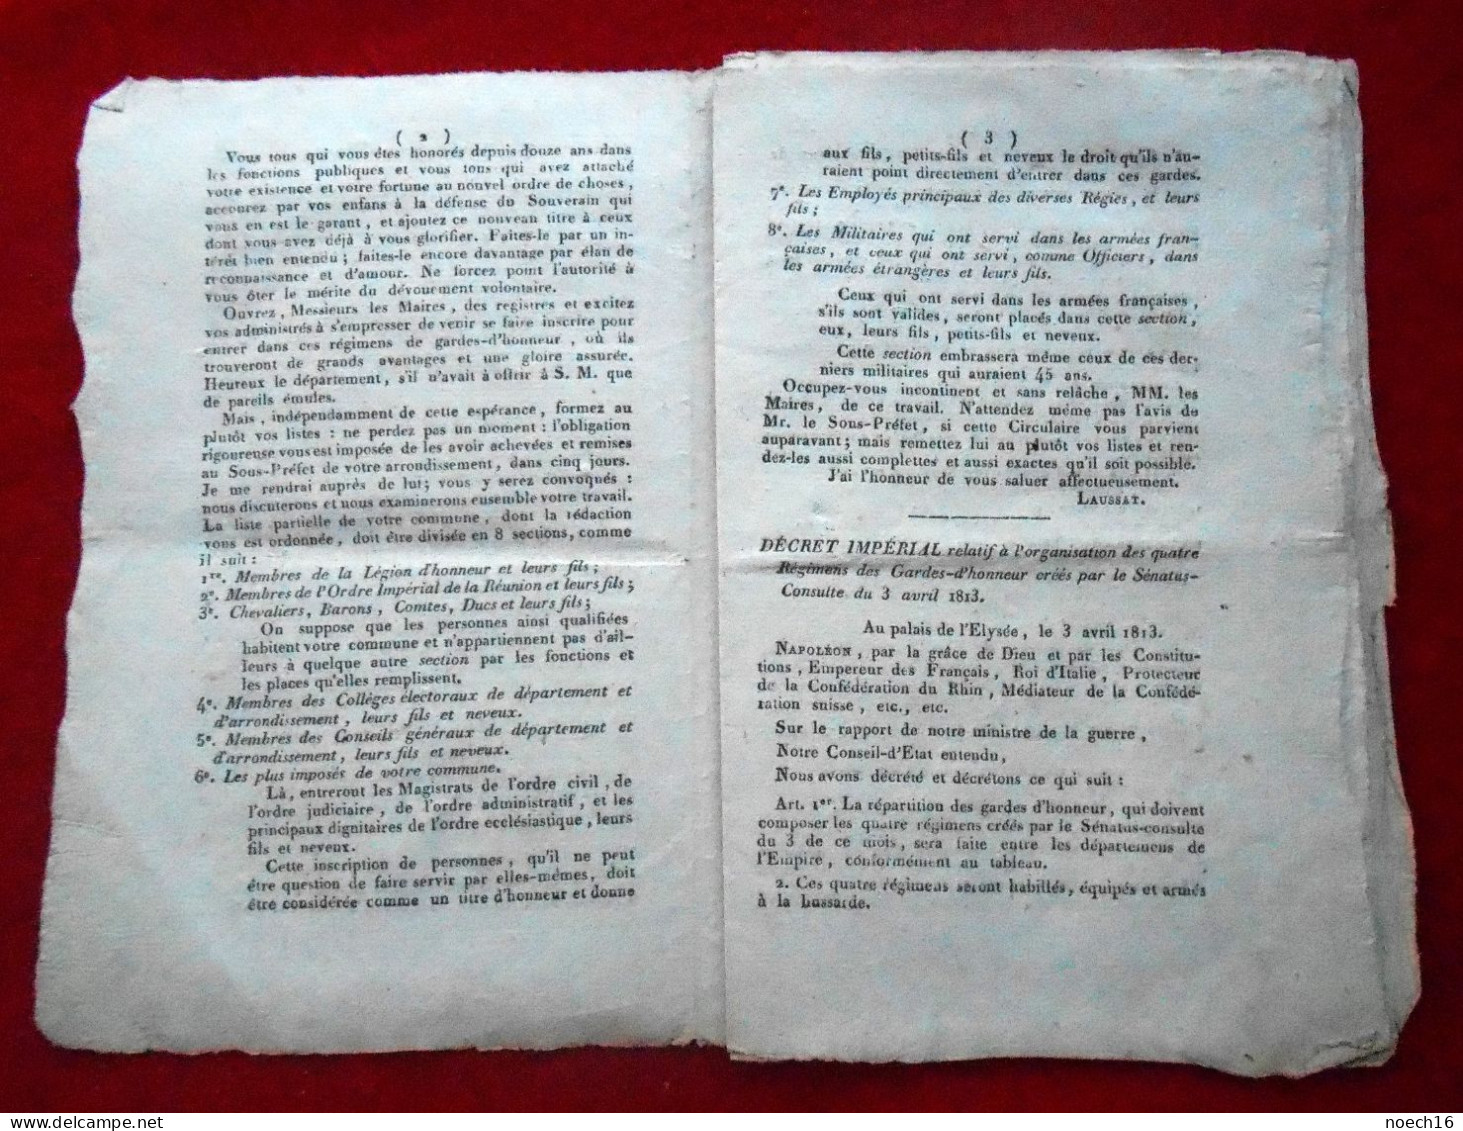 Département De Jemappe 1813. Décret Impérial, Organisation Des Gardes D'Honneur Par Napoléon 1er - Décrets & Lois